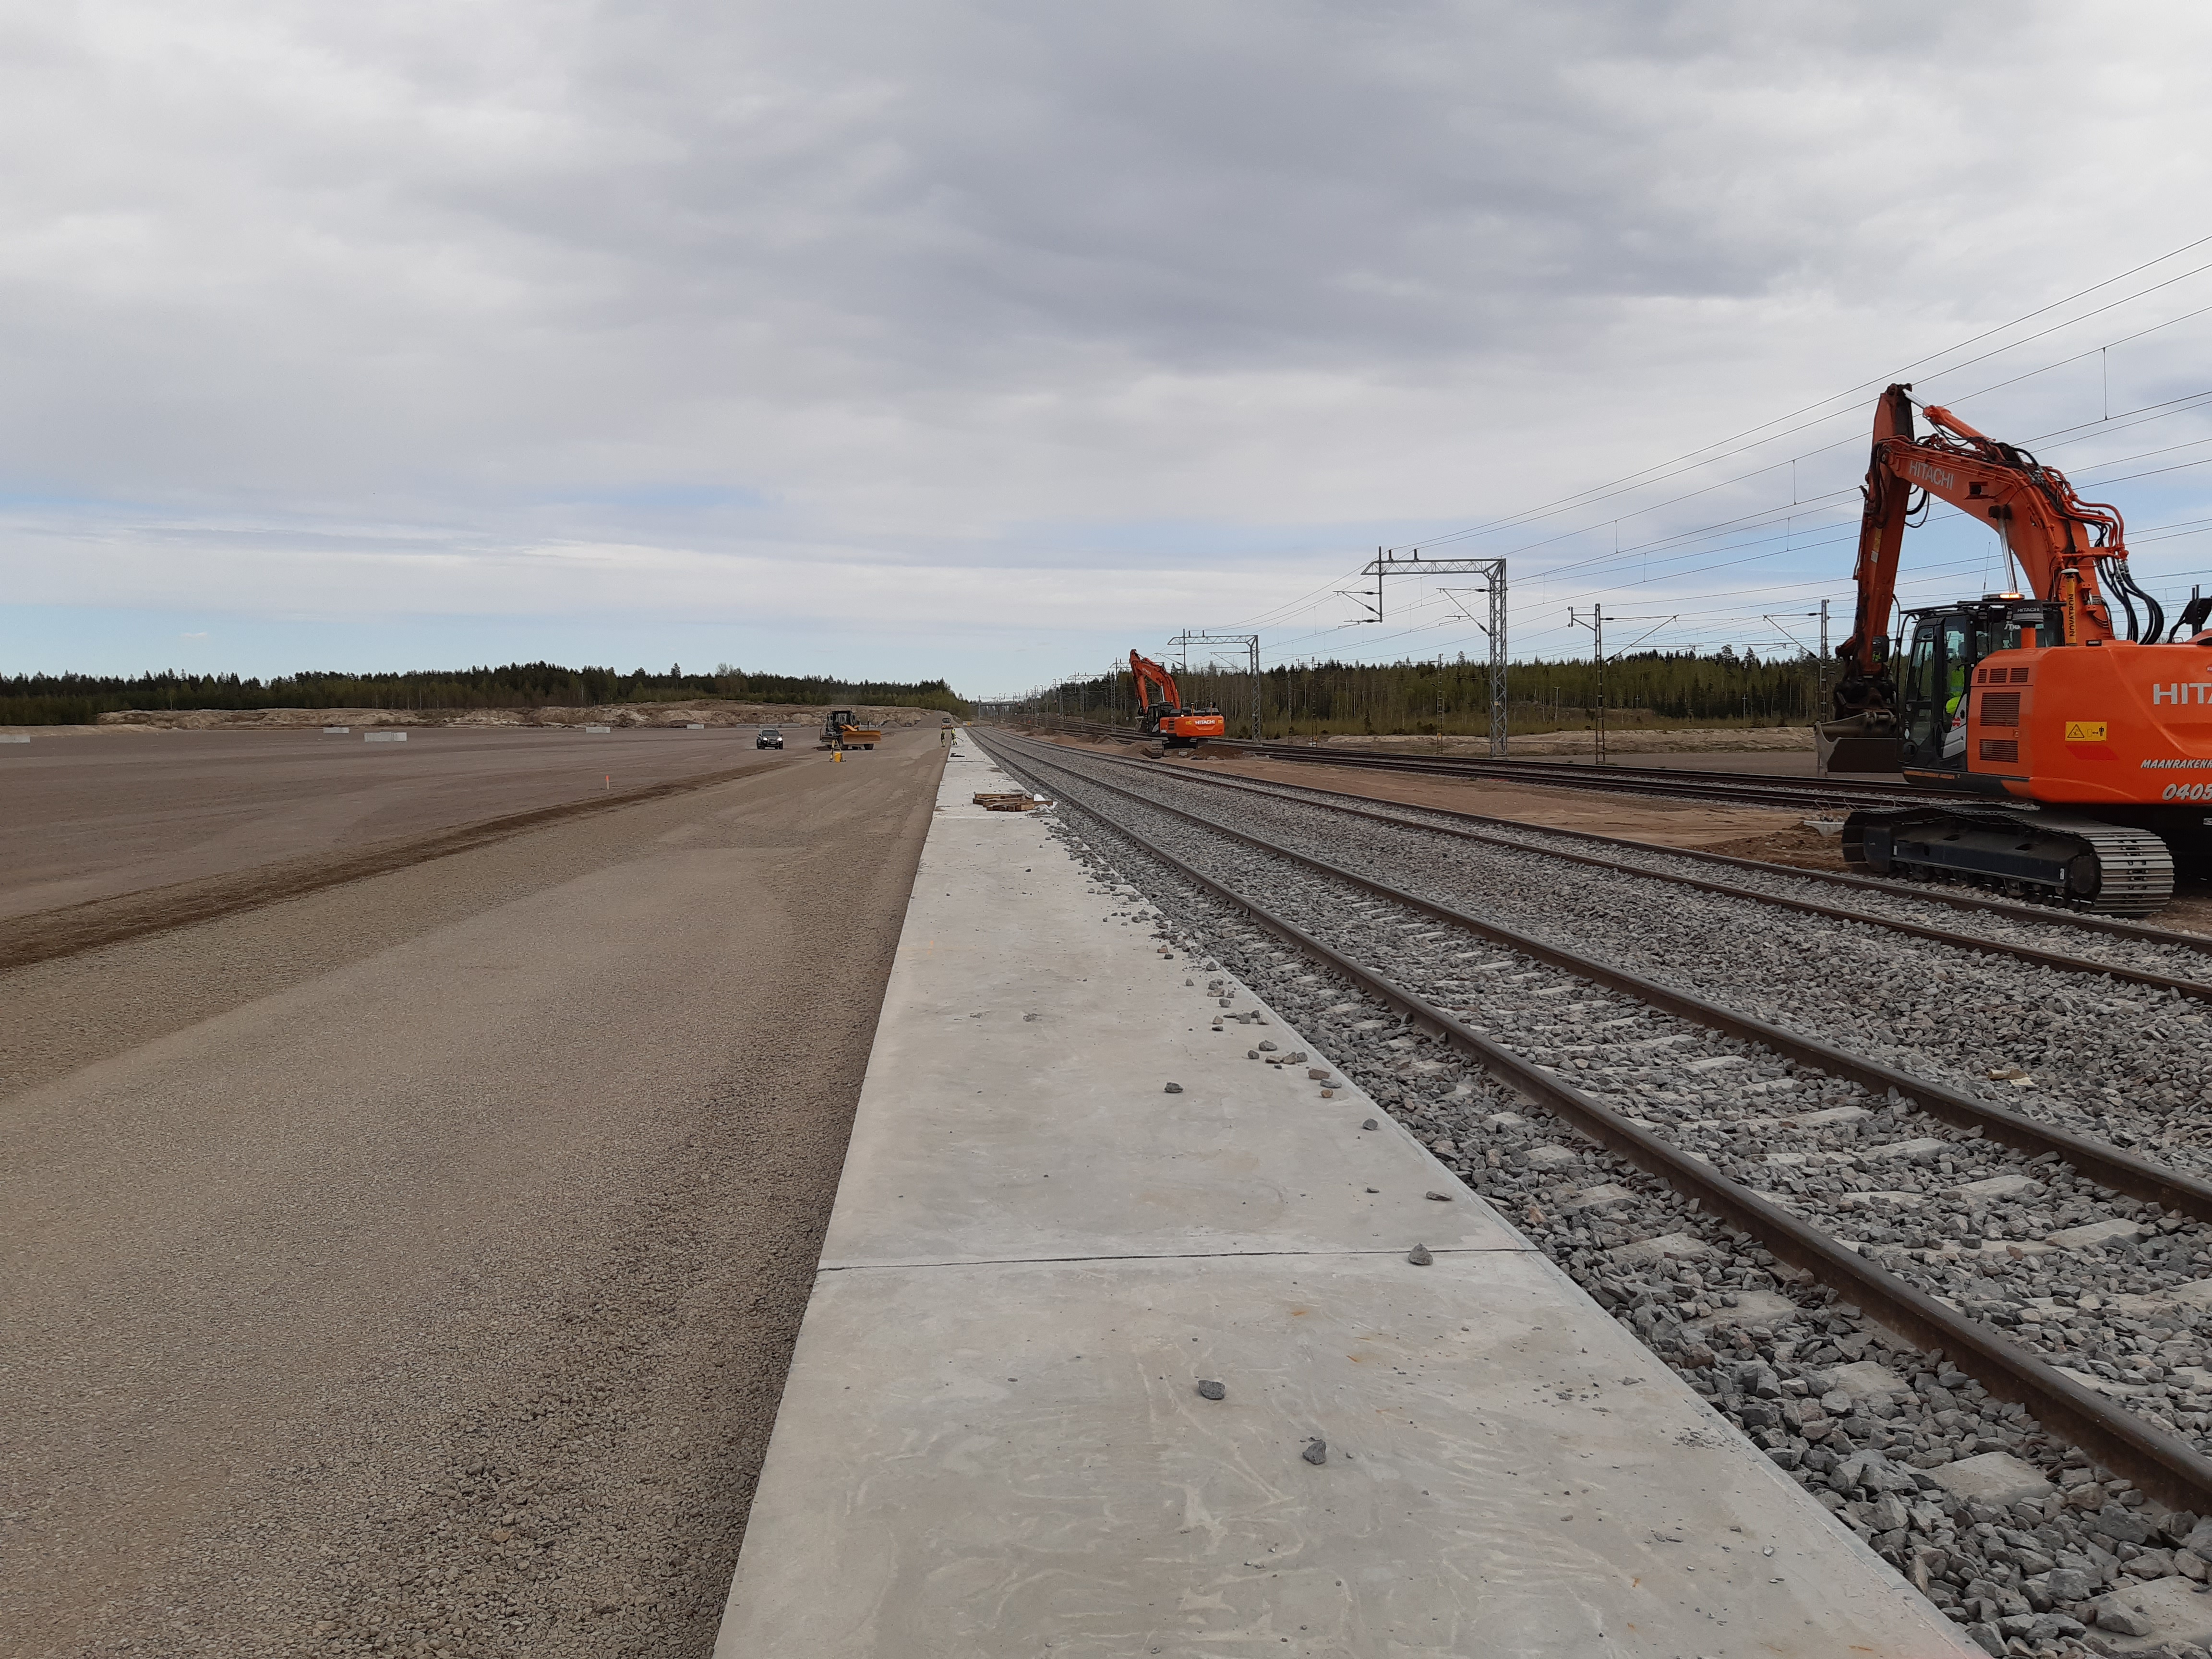 Kouvolan rautatie- ja maantieterminaali valmistuu tänä vuonna -  terminaaliraiteet lähes valmiit - Kouvolan kaupunki